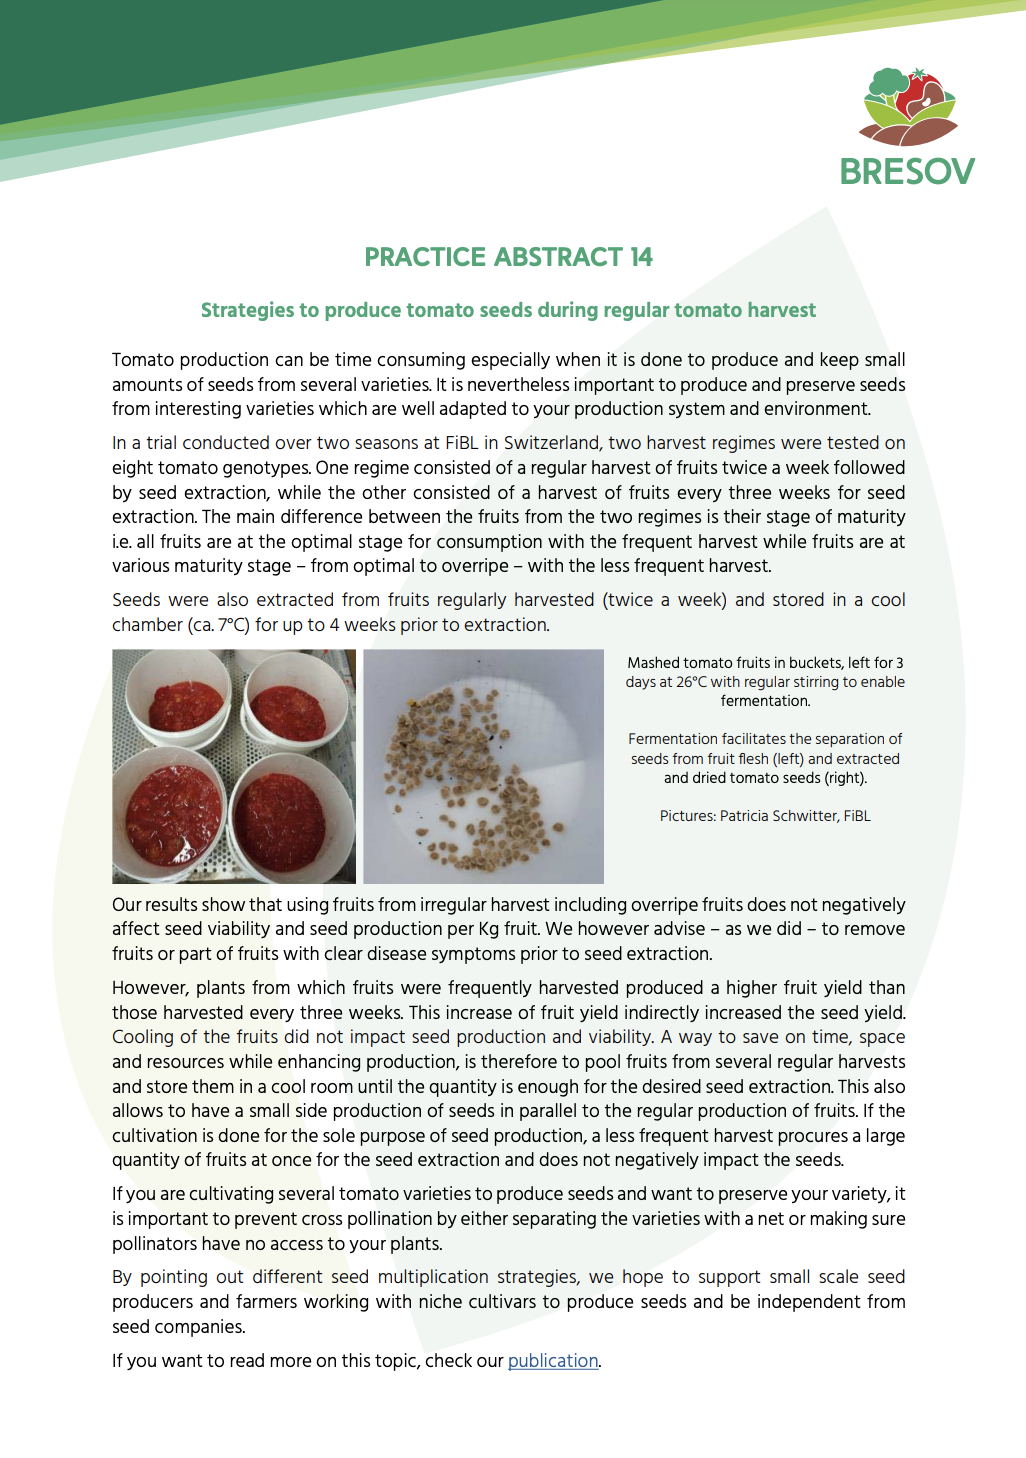 Strategie per produrre semi di pomodoro durante la normale raccolta del pomodoro (BRESOV Practice Abstract)